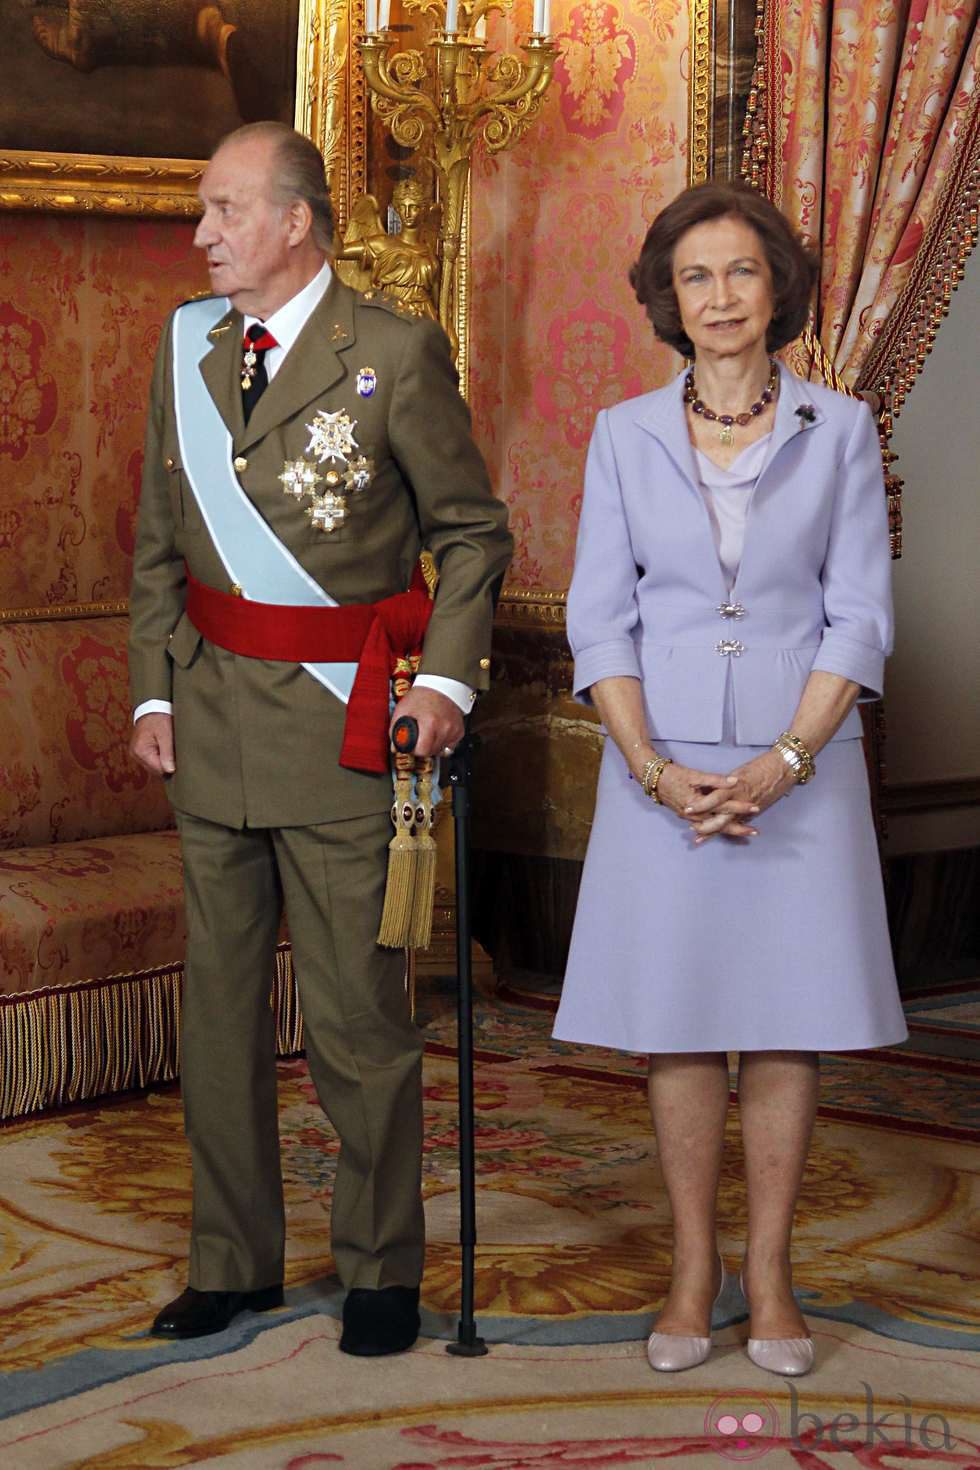 Los Reyes Juan Carlos y Sofía en el Palacio Real el Día de la Hispanidad